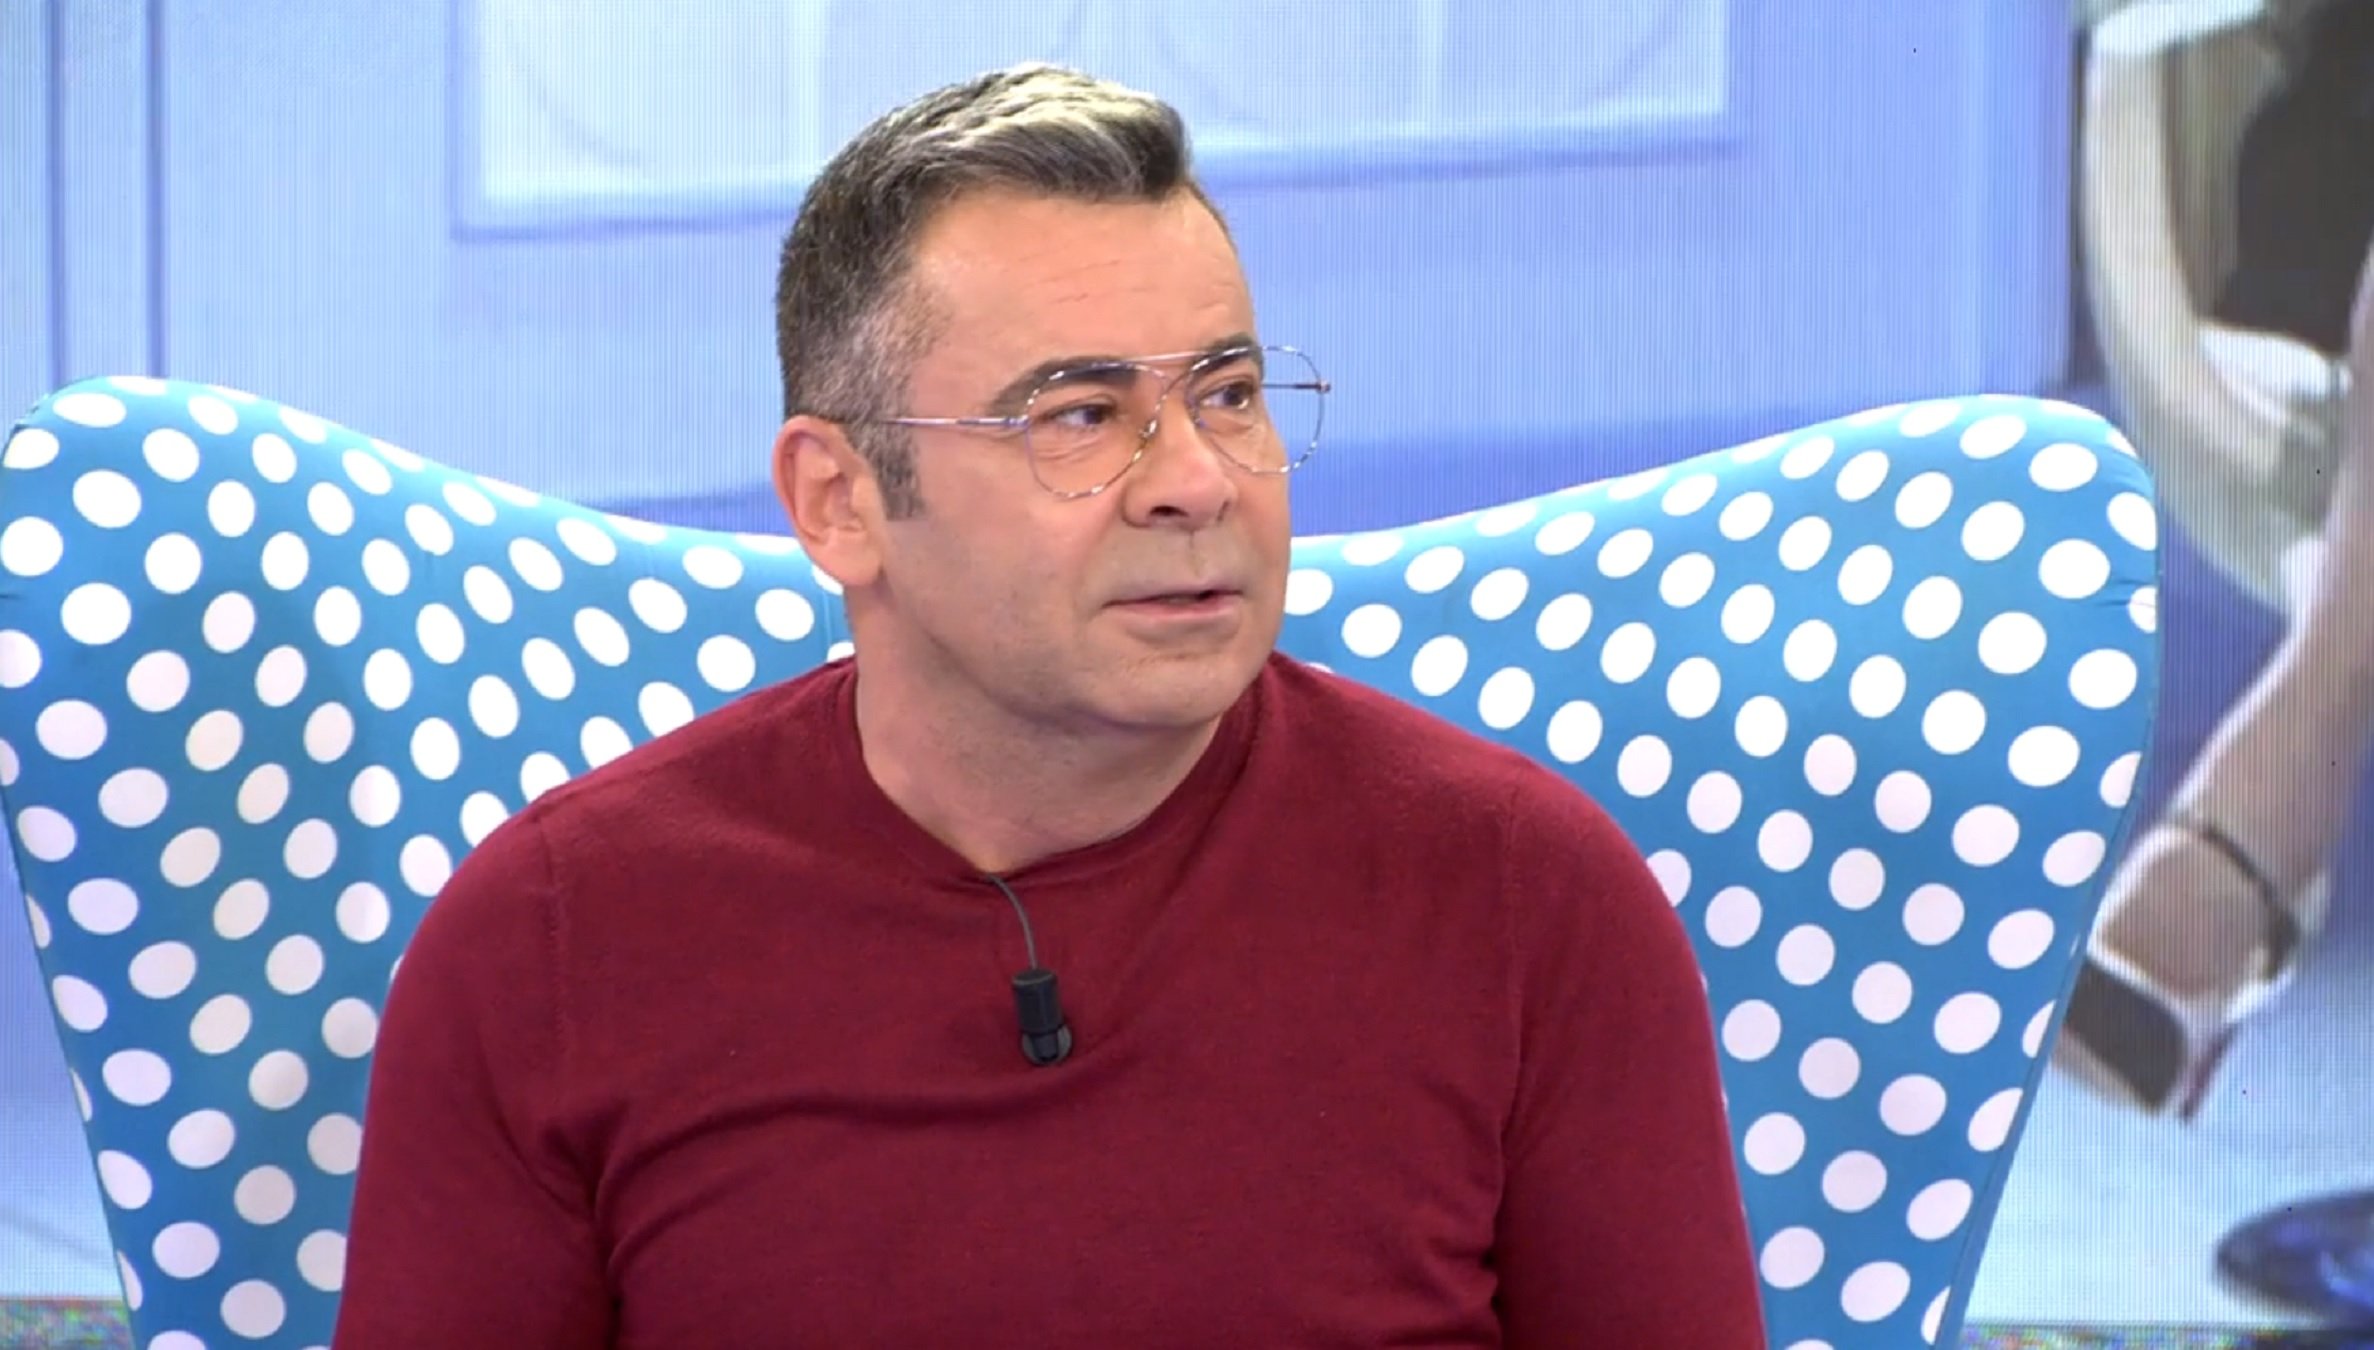 Nou tertulià fix a Sálvame: és un ex de TV3 i demana "llibertat presos polítics"